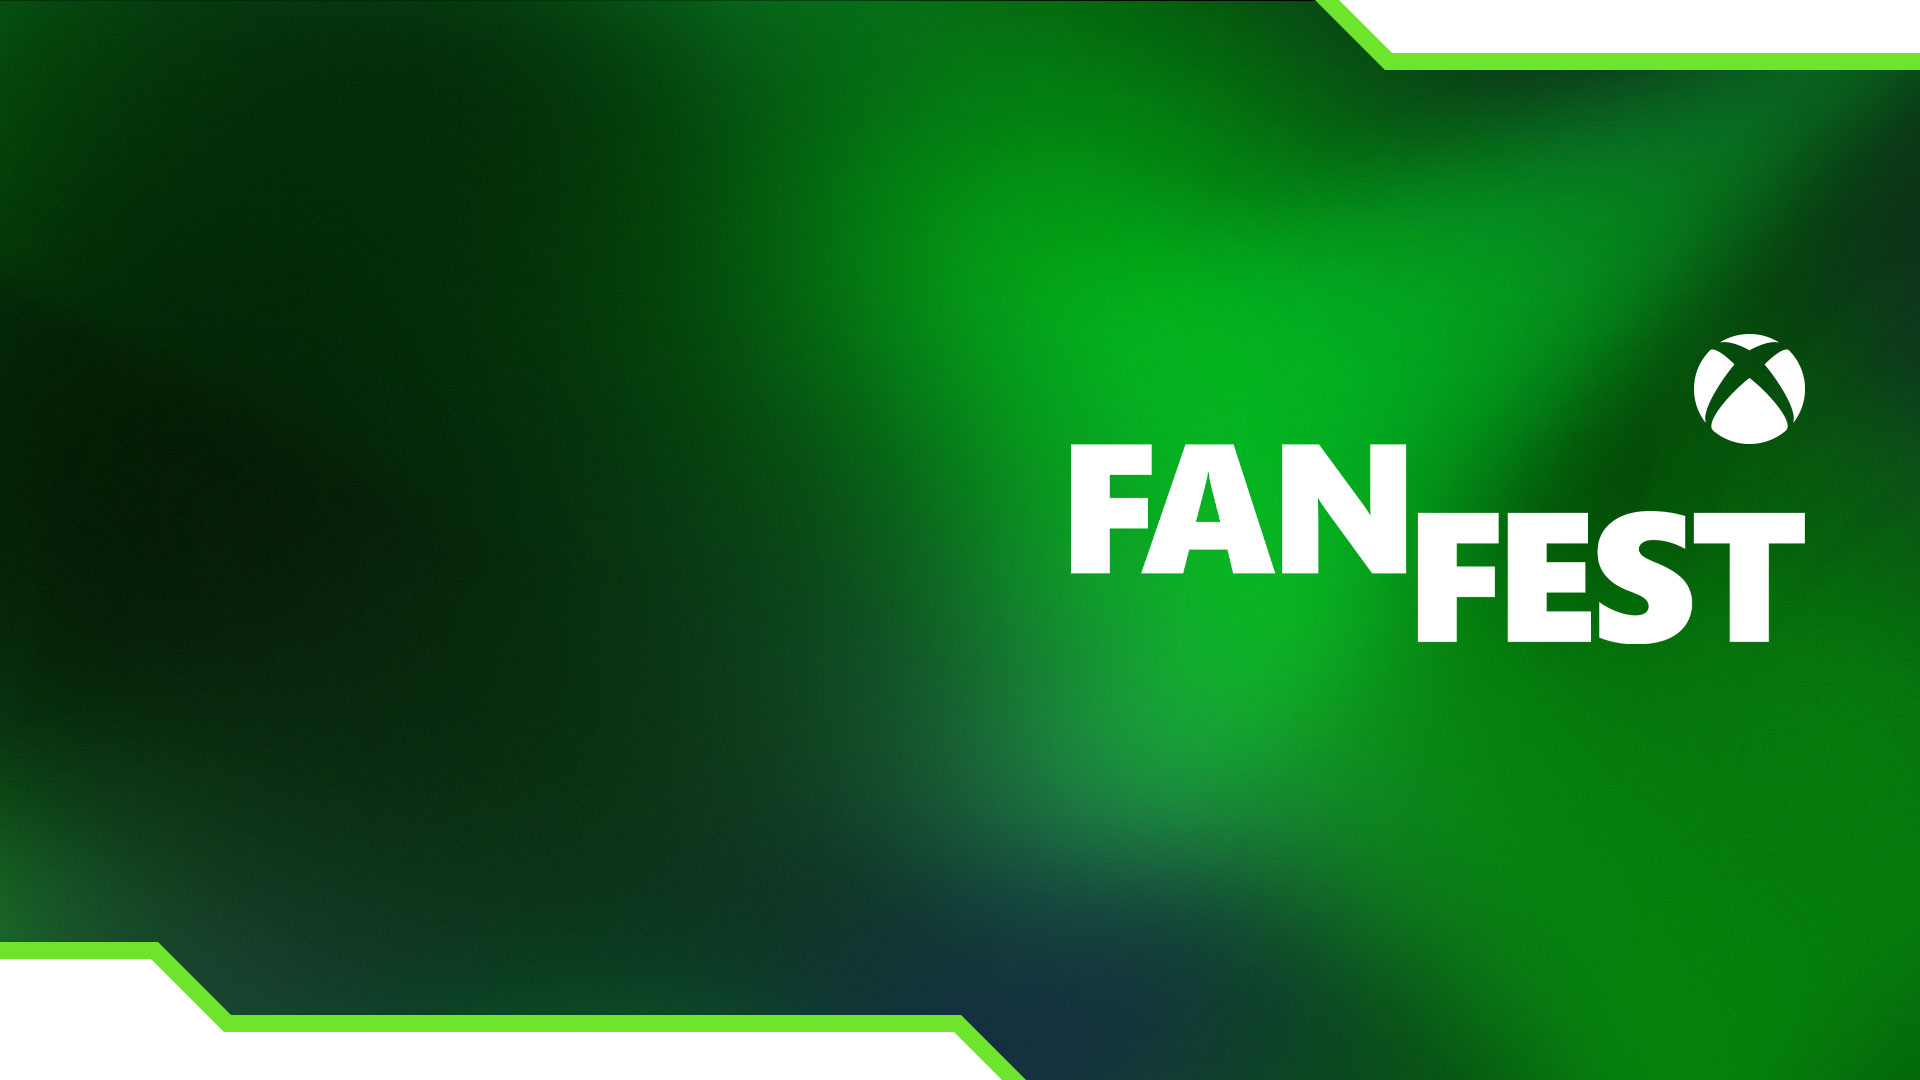 Xbox Sphere, FanFest met groene kleurverlopen.